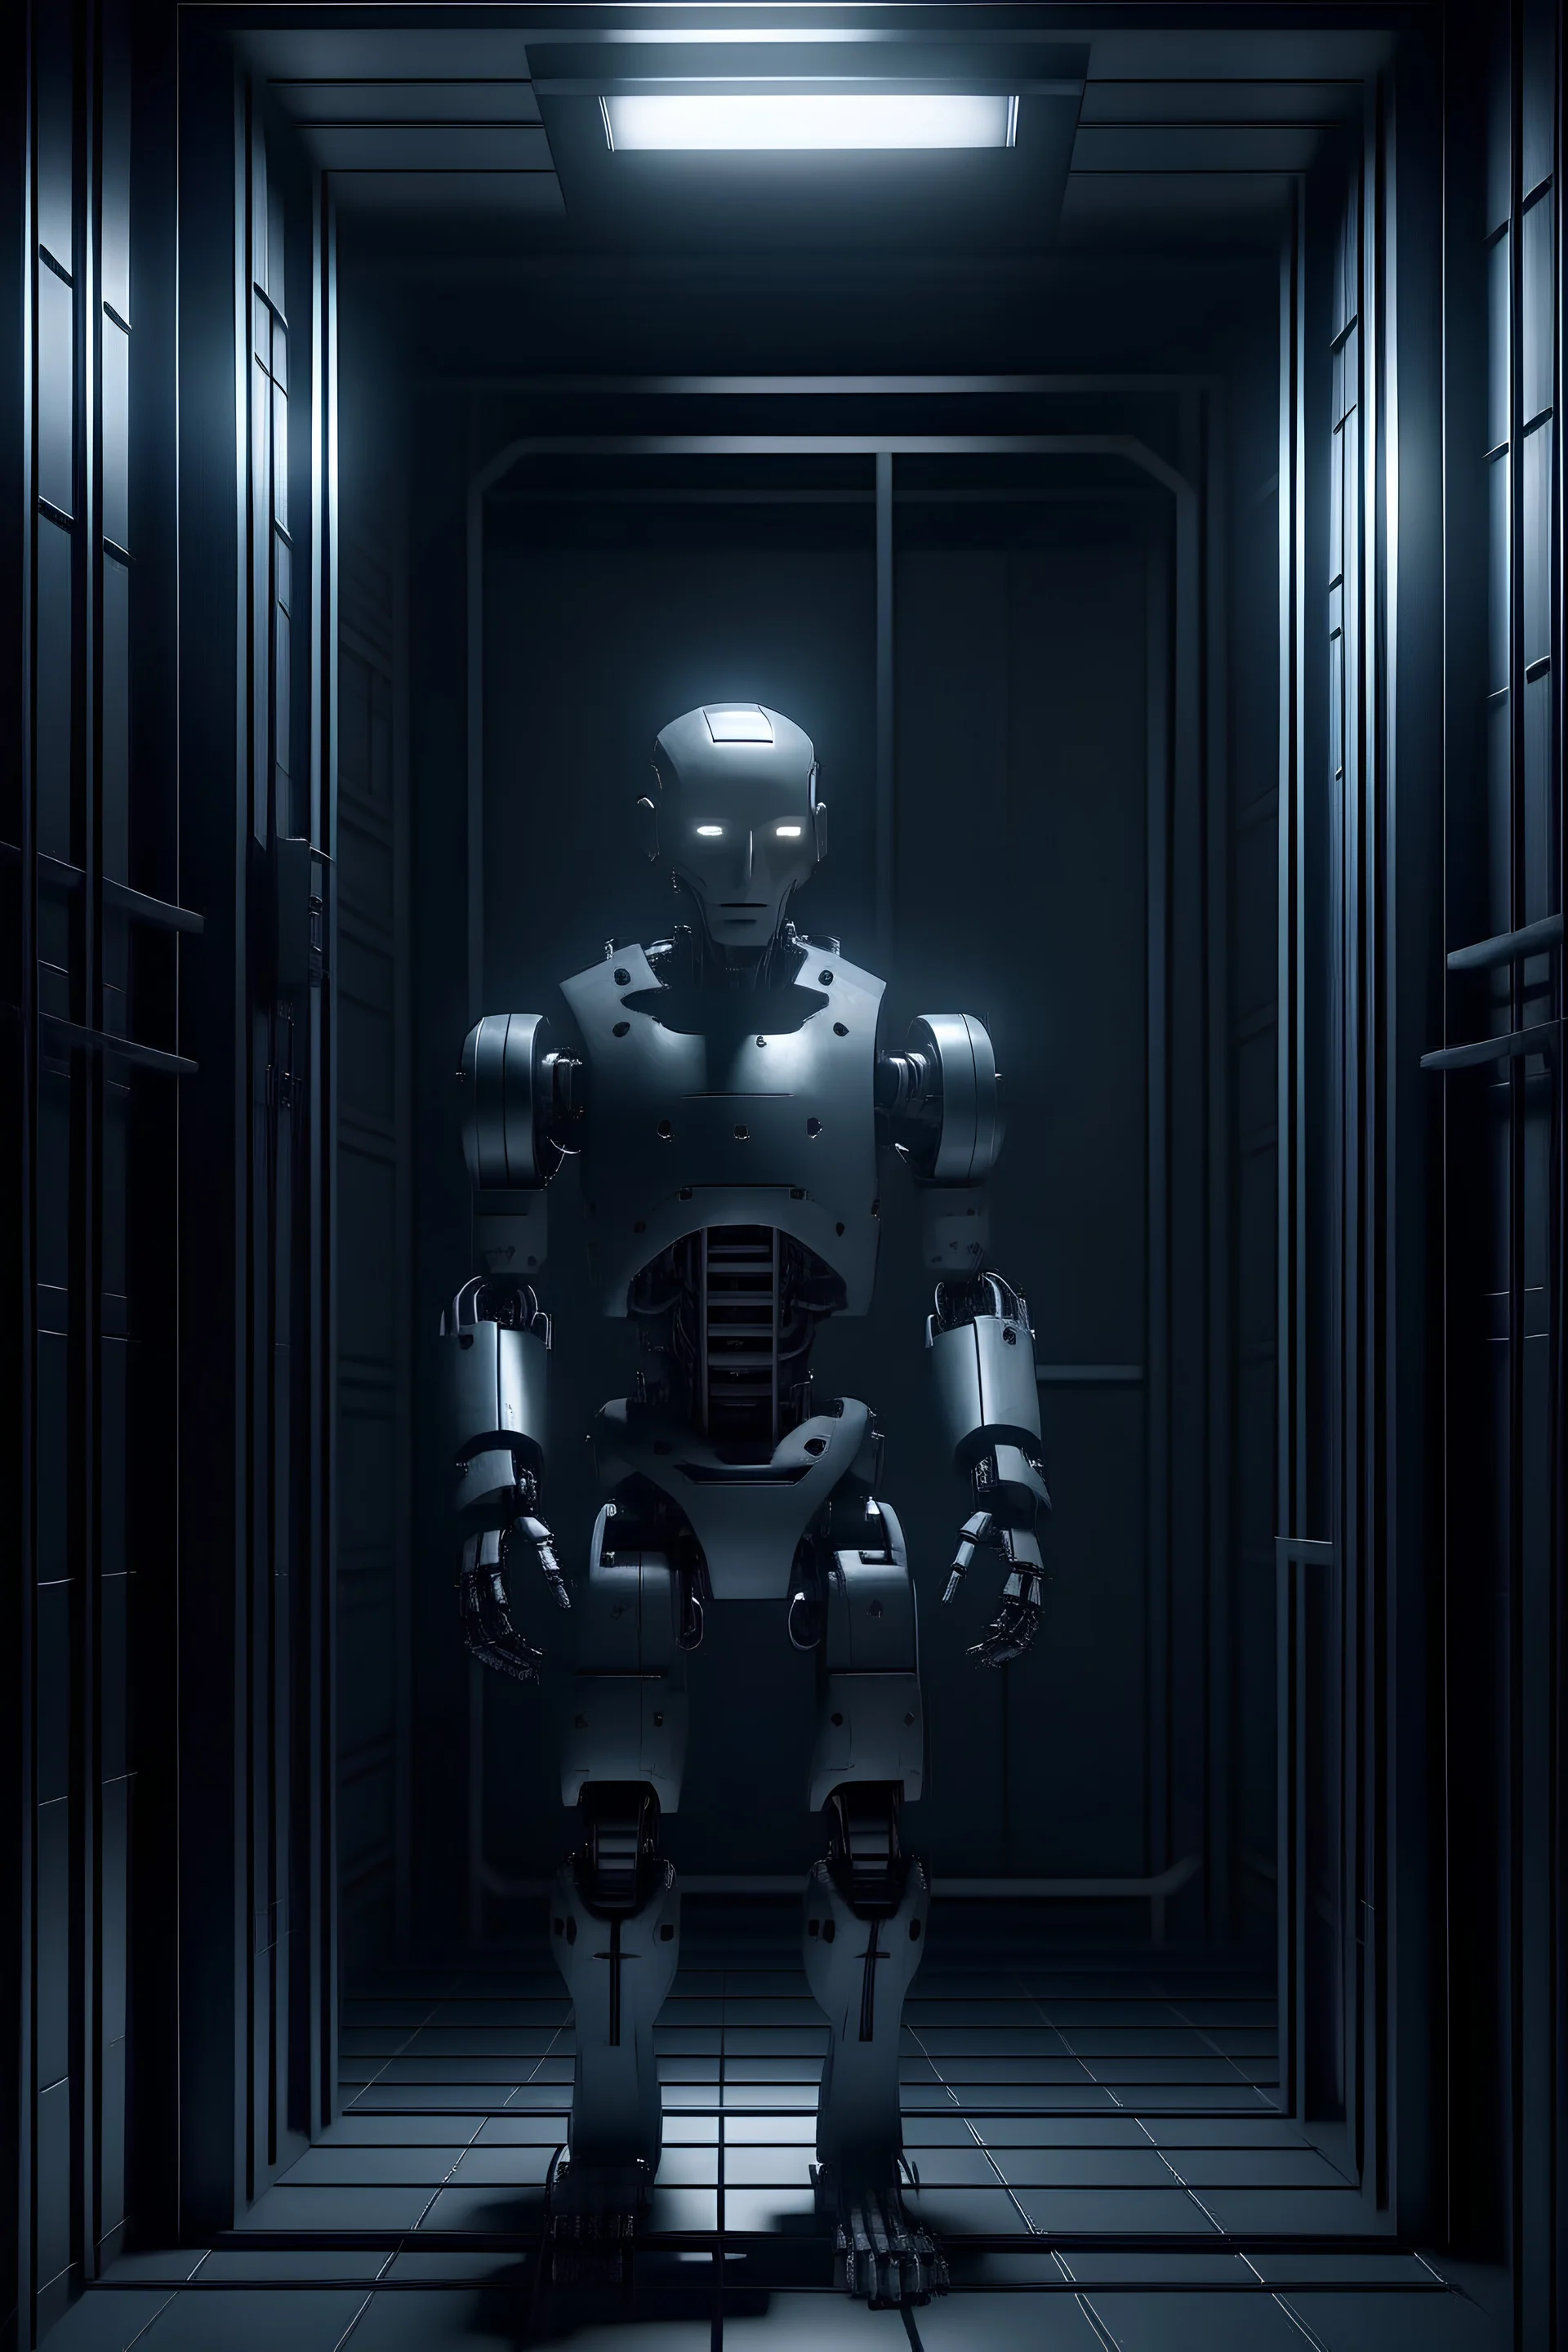 Imagen realista de un robot similar a un humano potenciado con inteligencia artificial encerrado en una celda de una prisión atmósfera oscura.